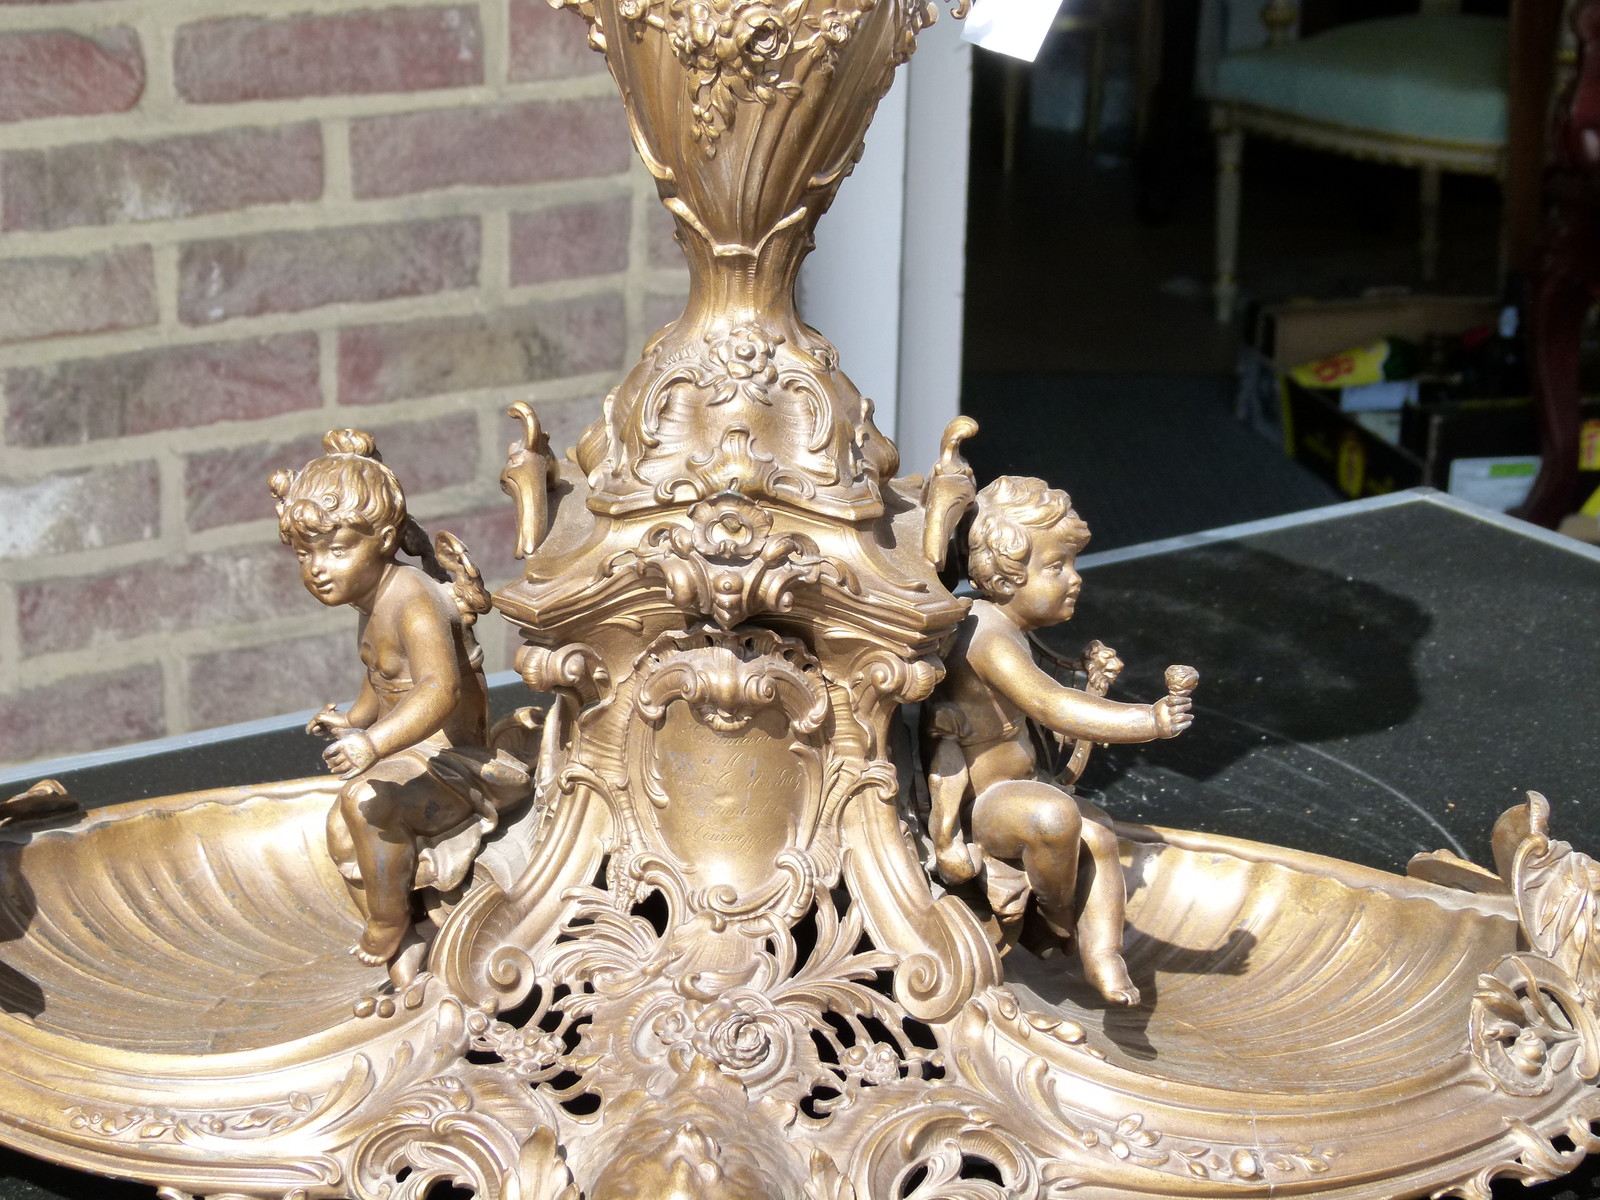 Huge Bell epoque centerpiece with cherubs